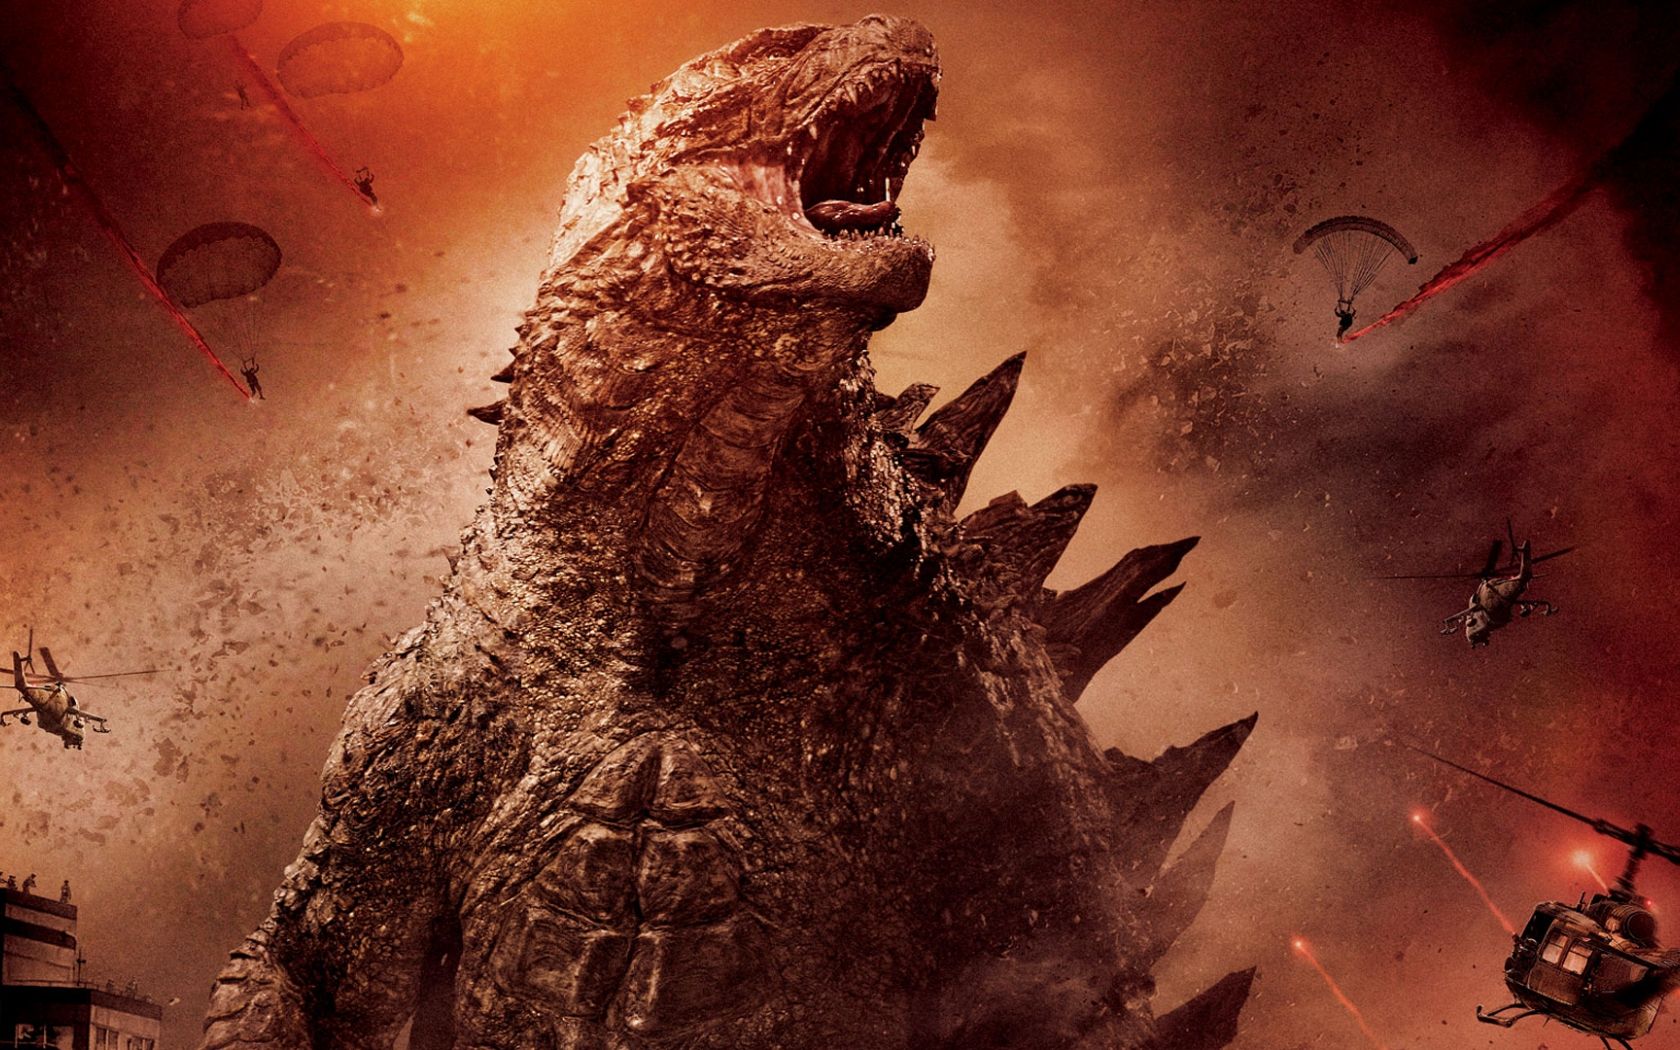 Free download Godzilla 2014 Wallpaper 1920x1080